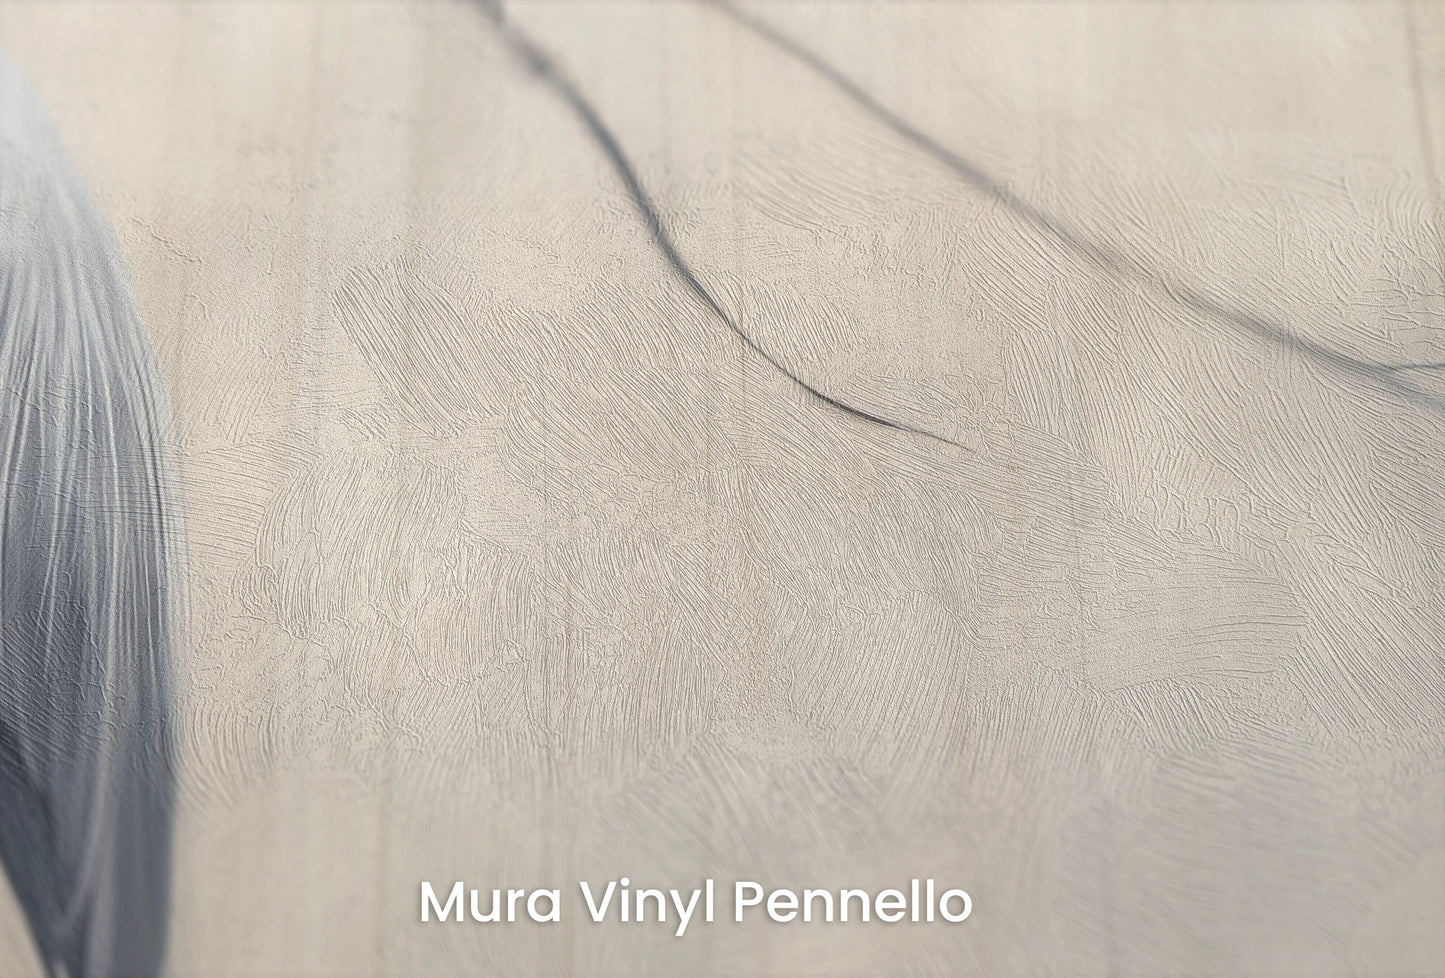 Zbliżenie na artystyczną fototapetę o nazwie Heron's Realm na podłożu Mura Vinyl Pennello - faktura pociągnięć pędzla malarskiego.